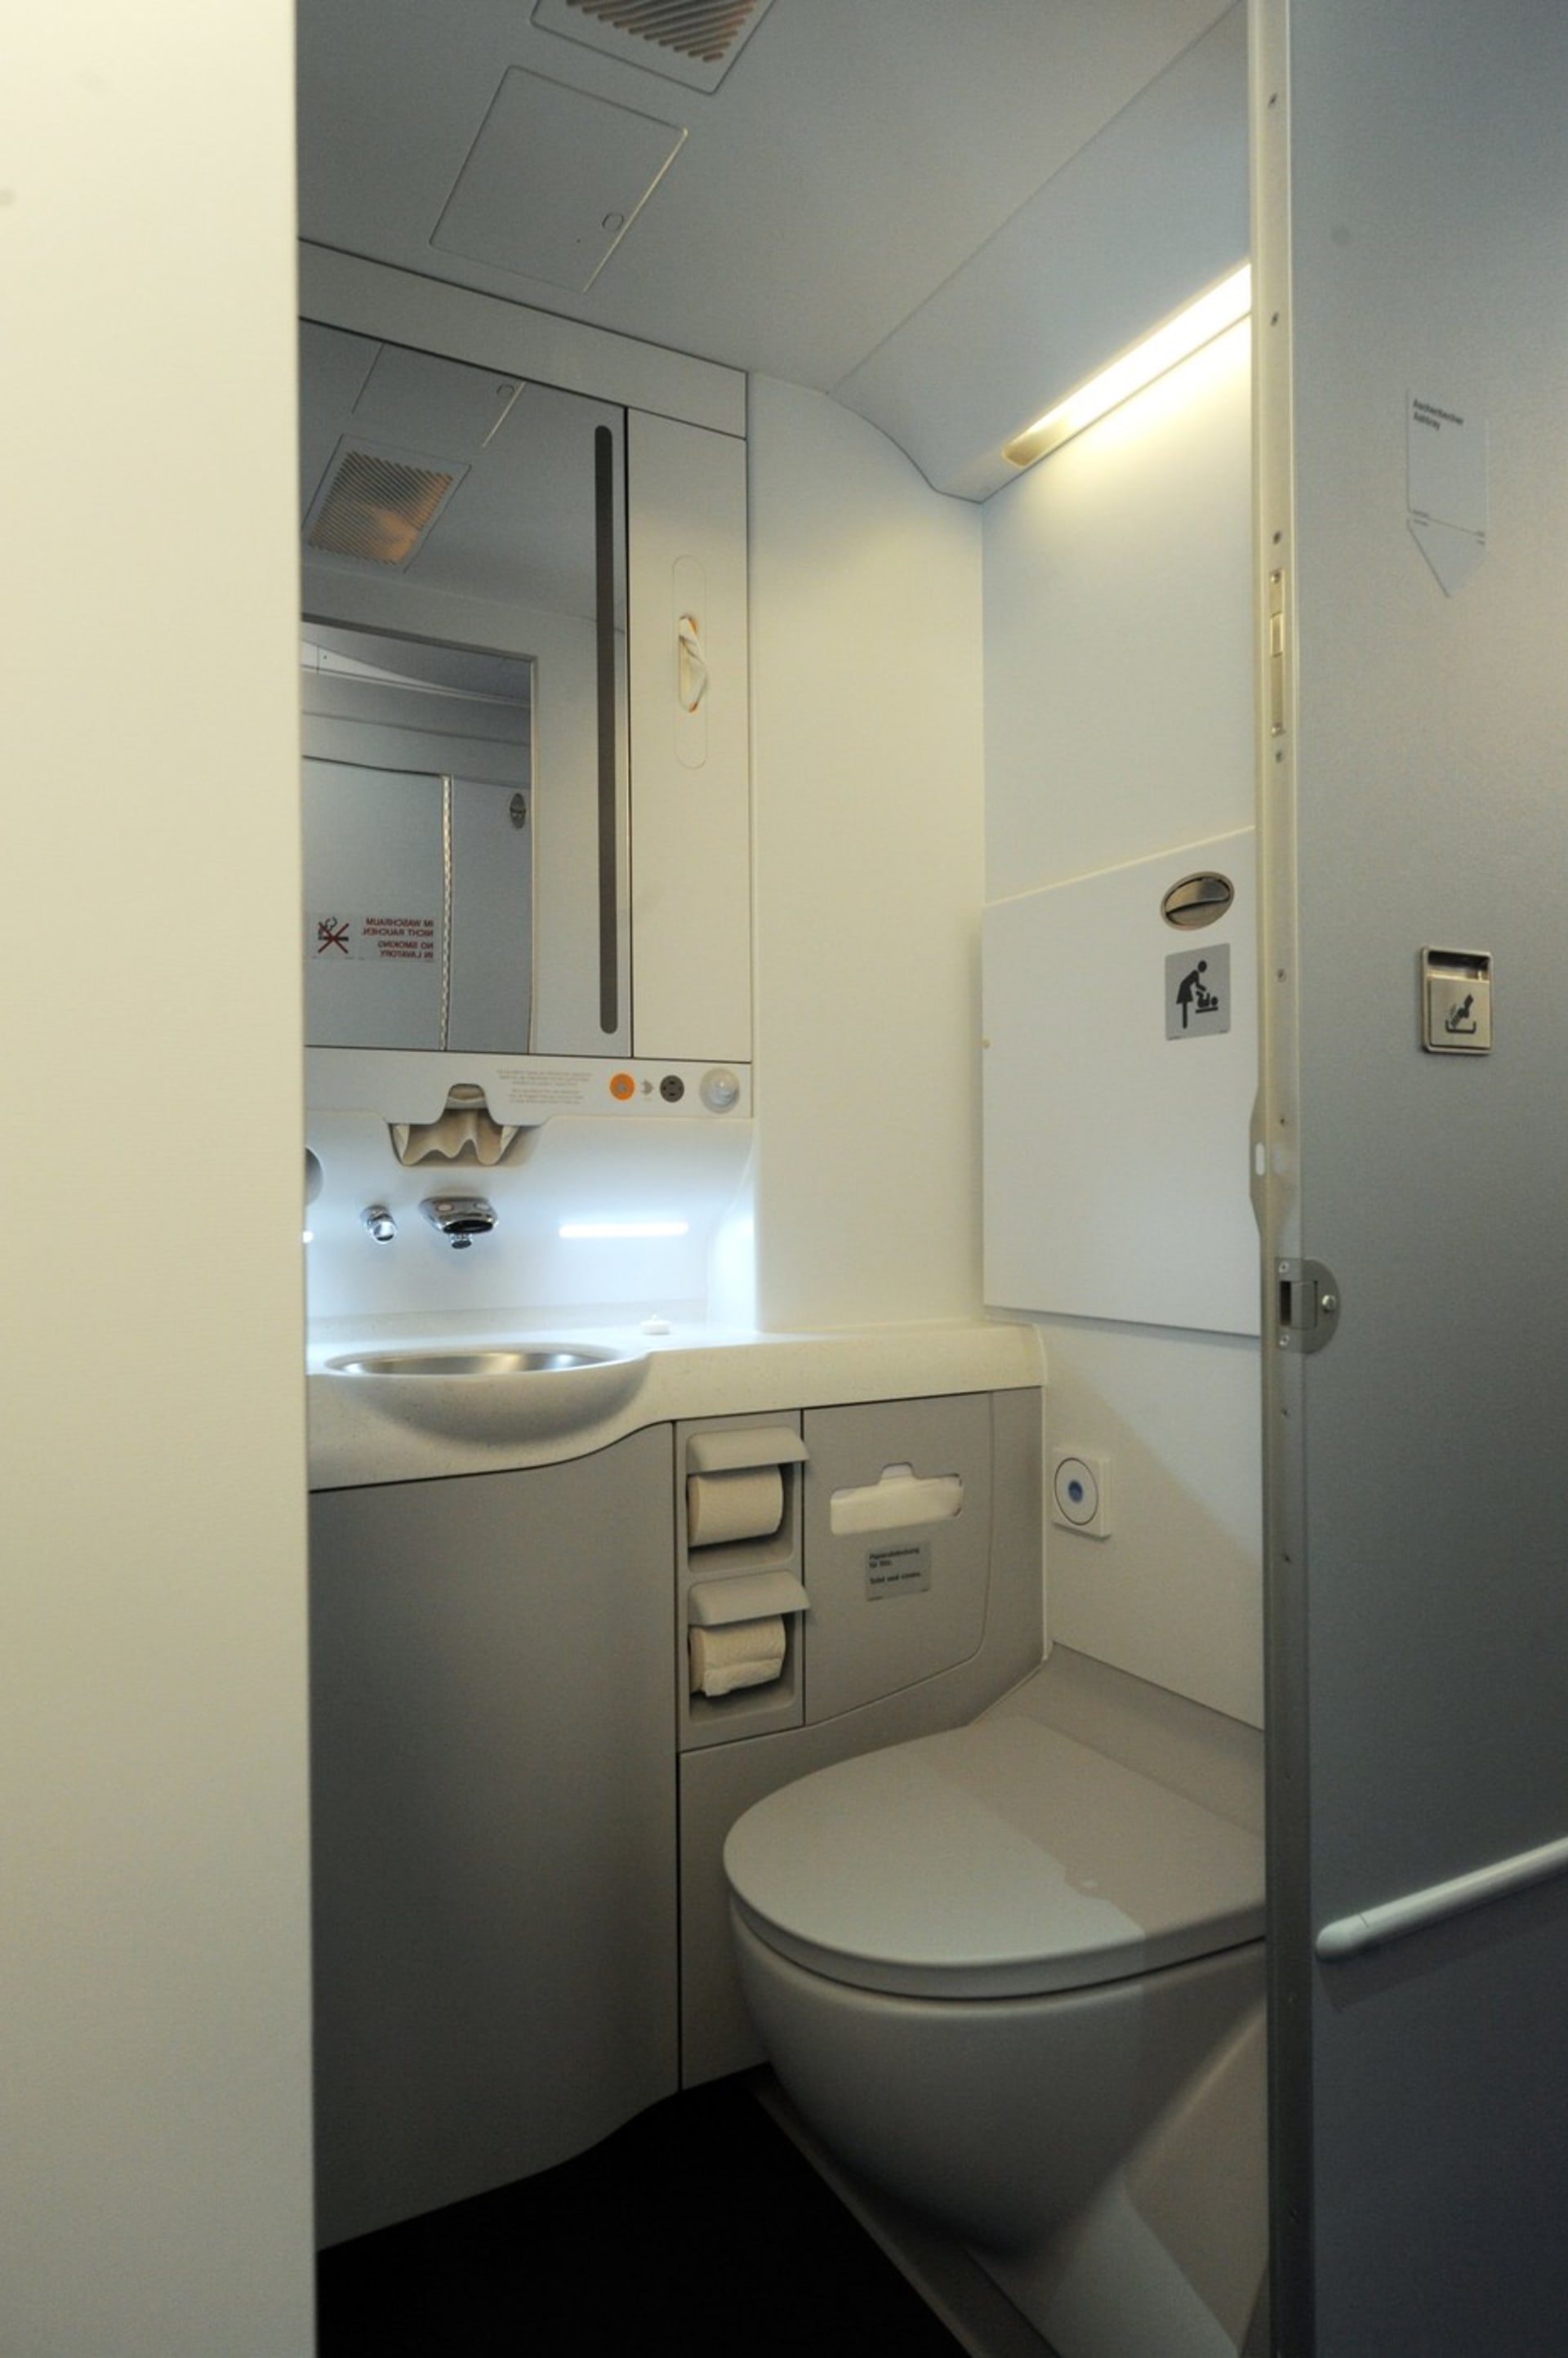 Toaleta v Airbusu A380